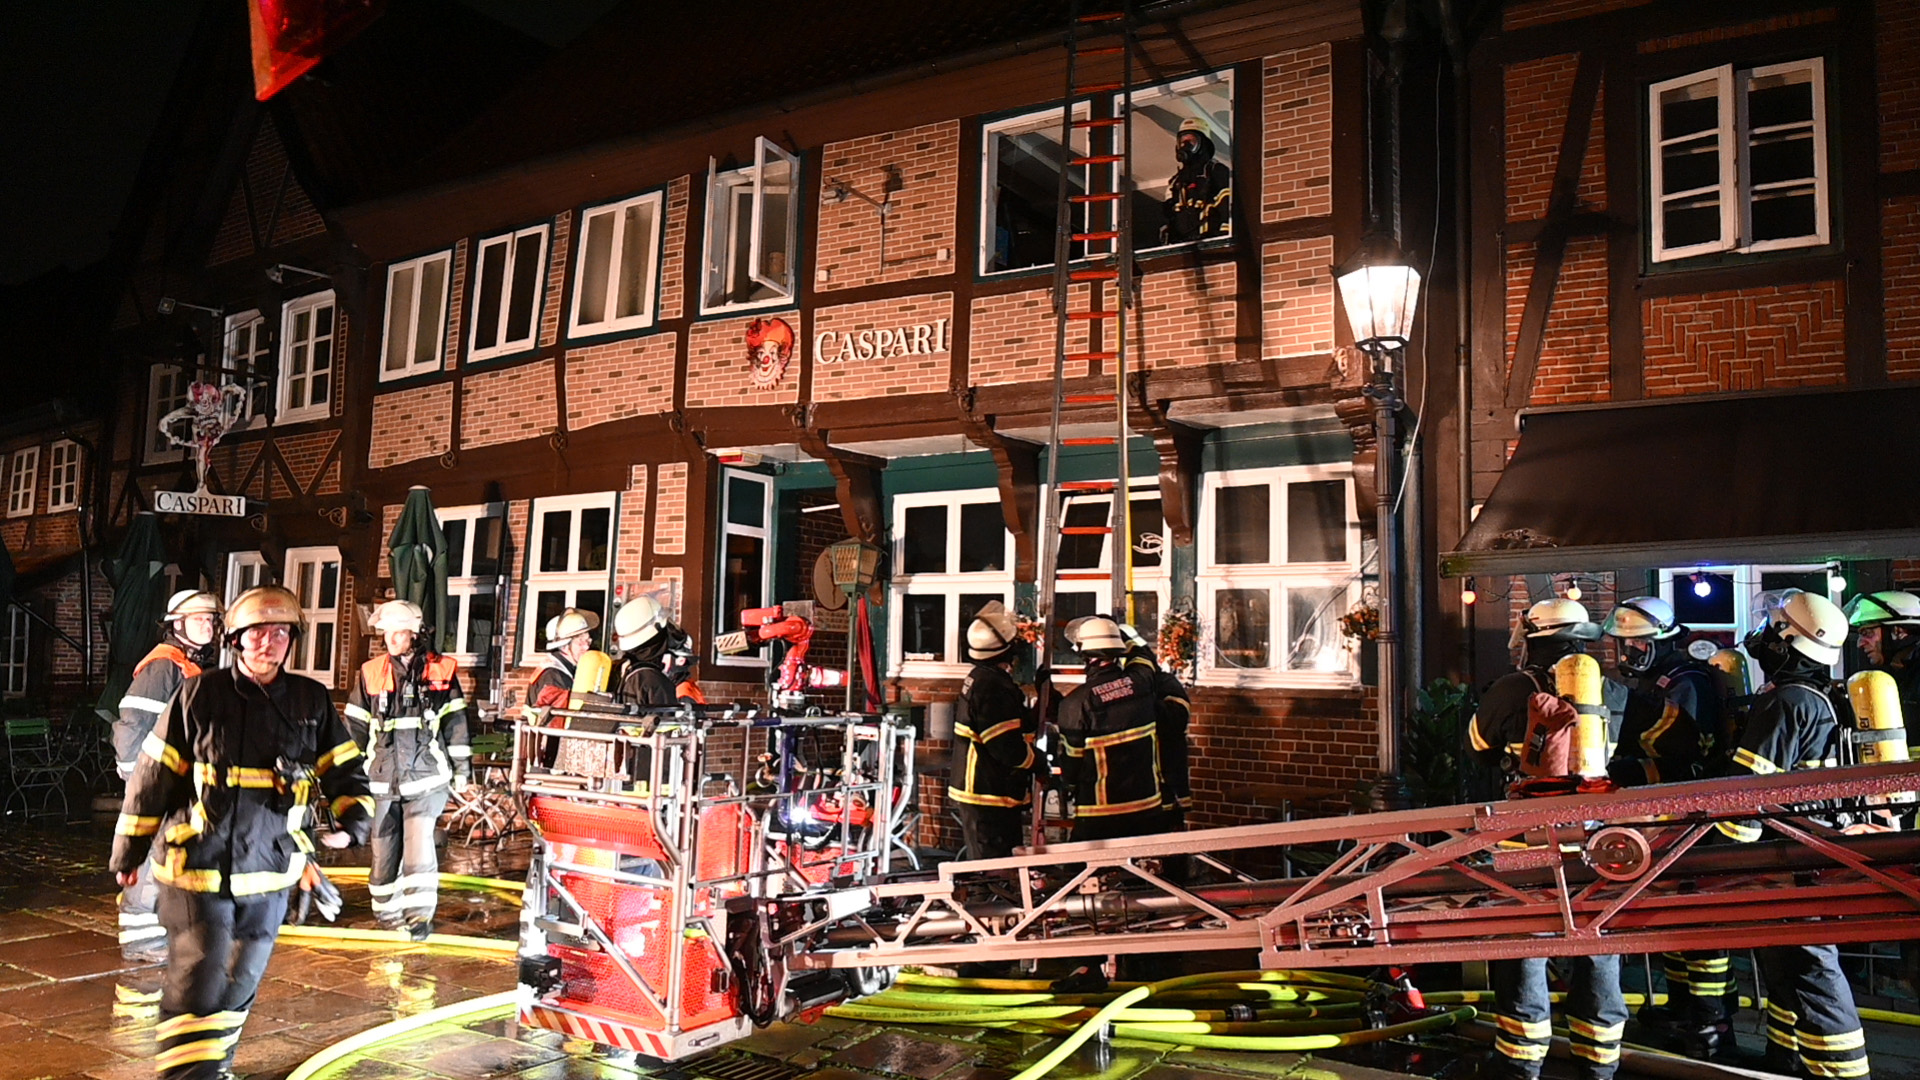 Feuer in hostorischen Haus mit restaurant in Harburg – mehr als 70 Retter waren im Einsatz